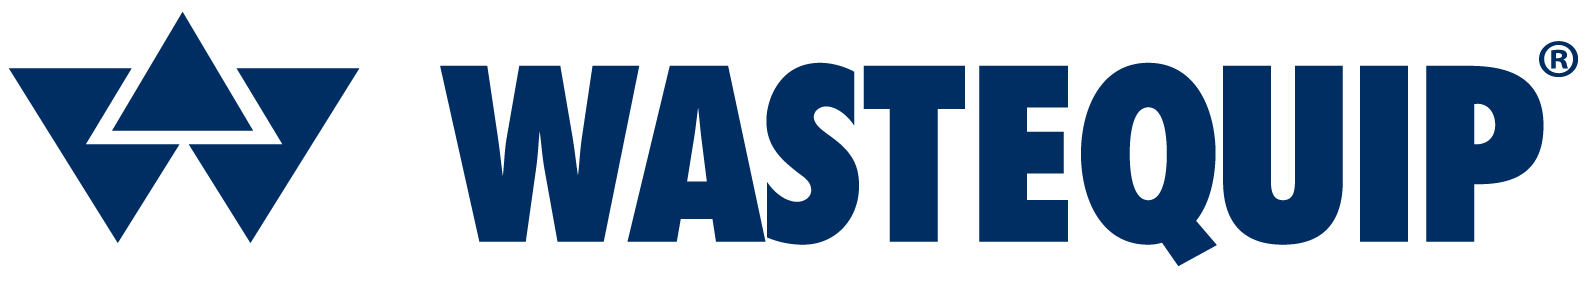 Wastequip color logo